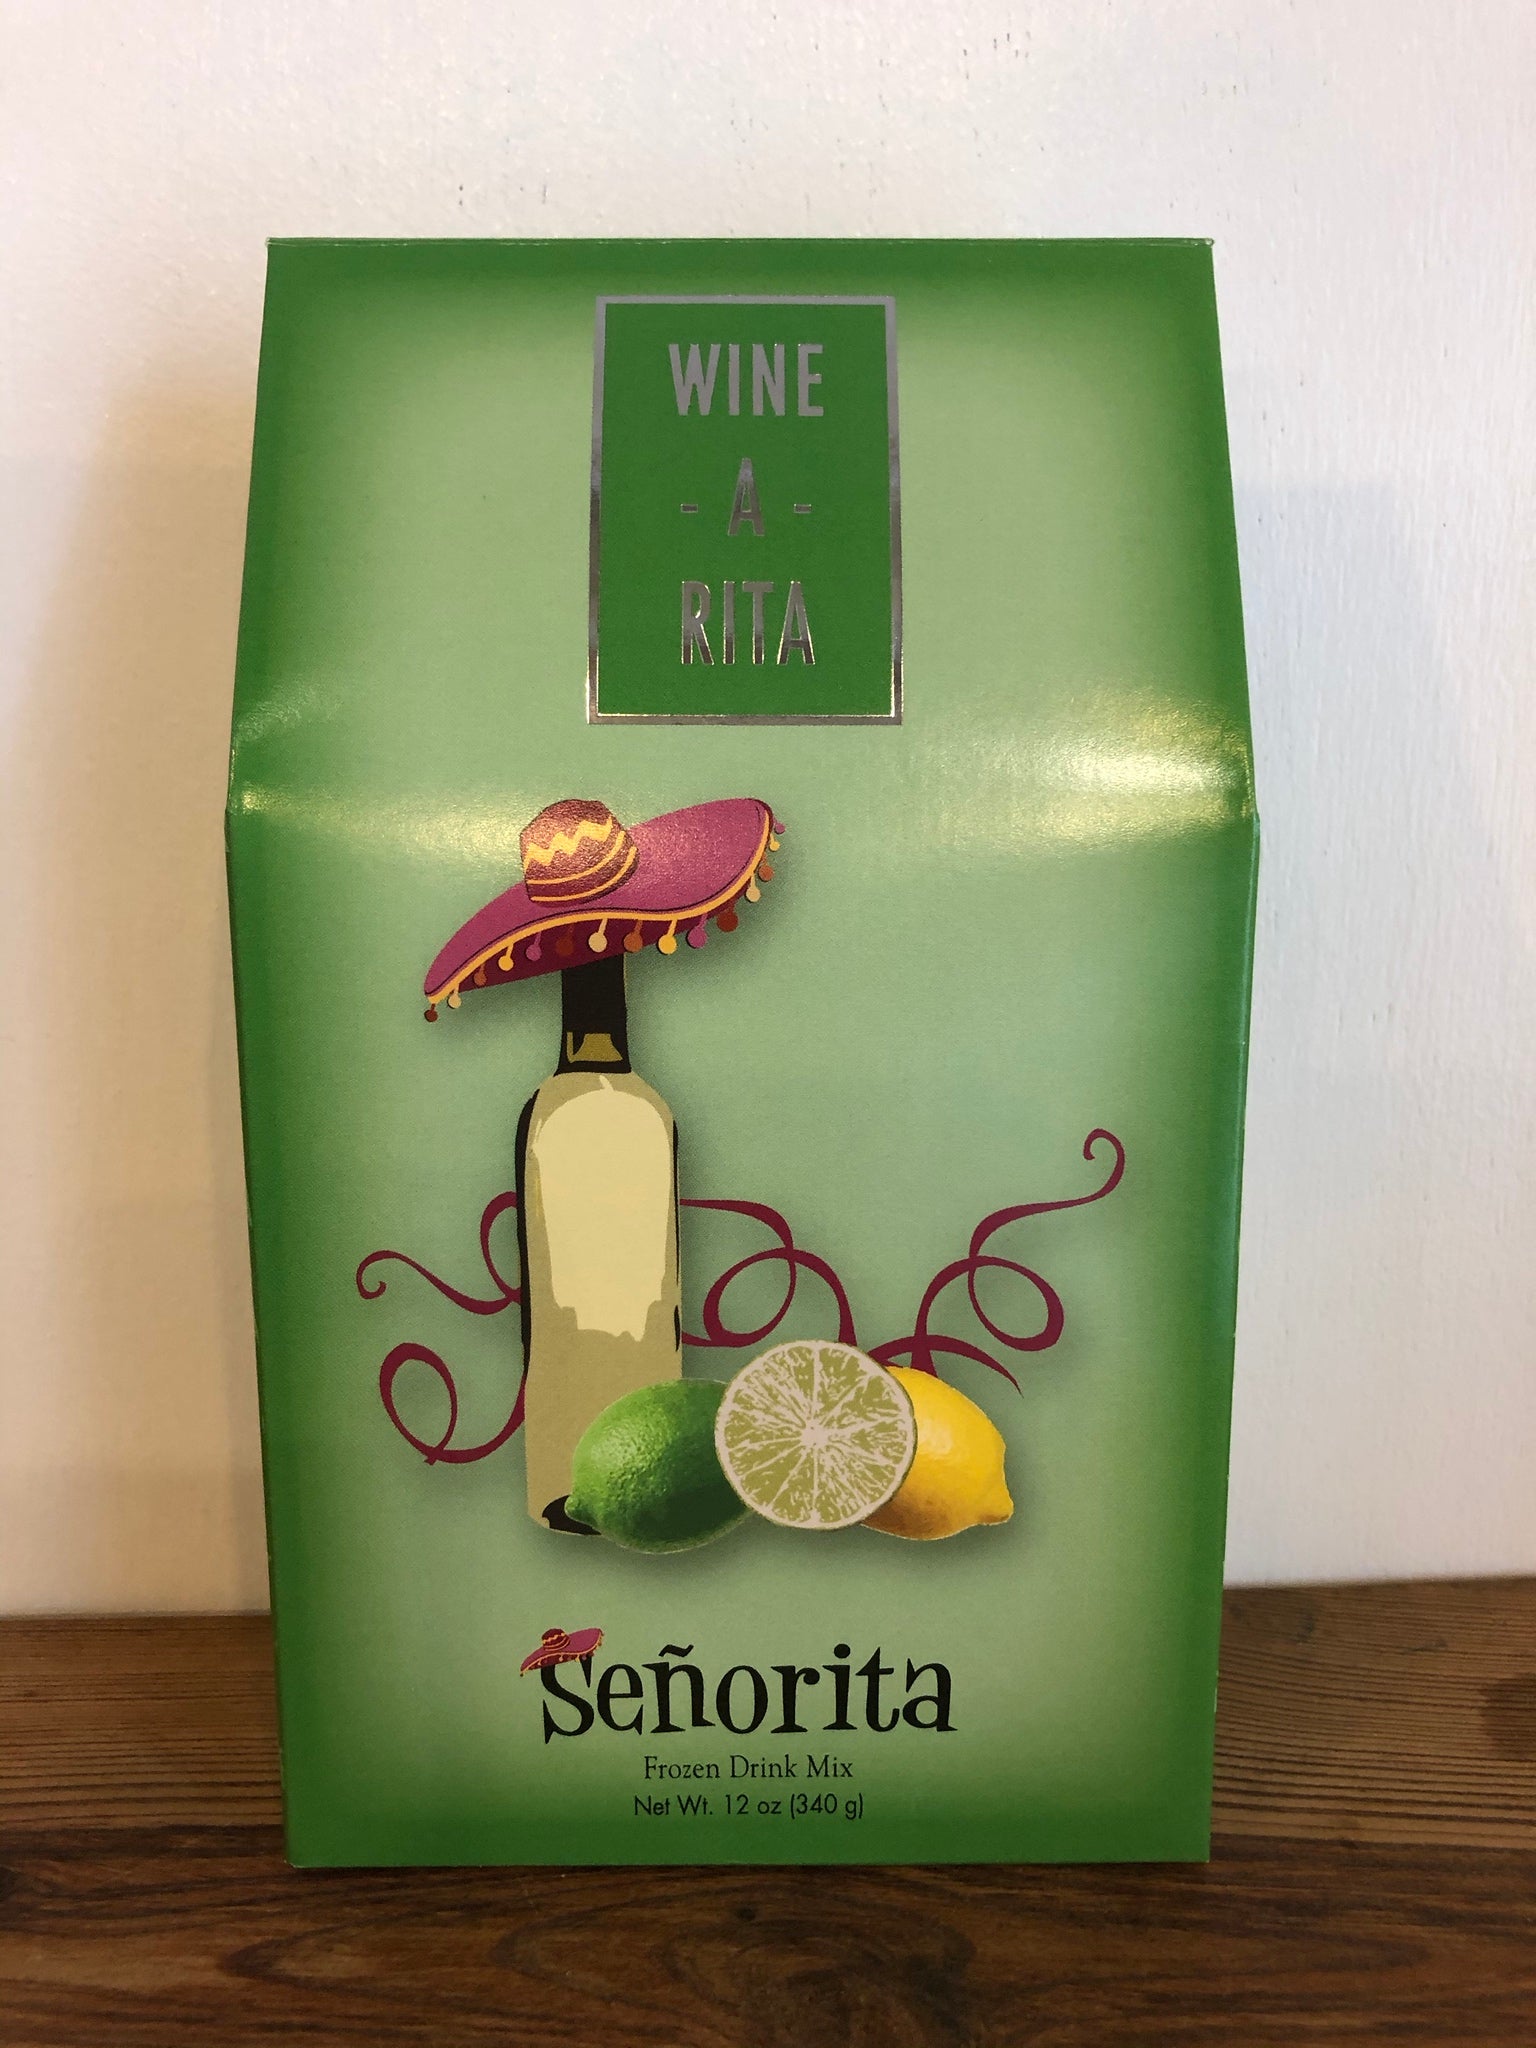 Senorita Wine-a-Rita